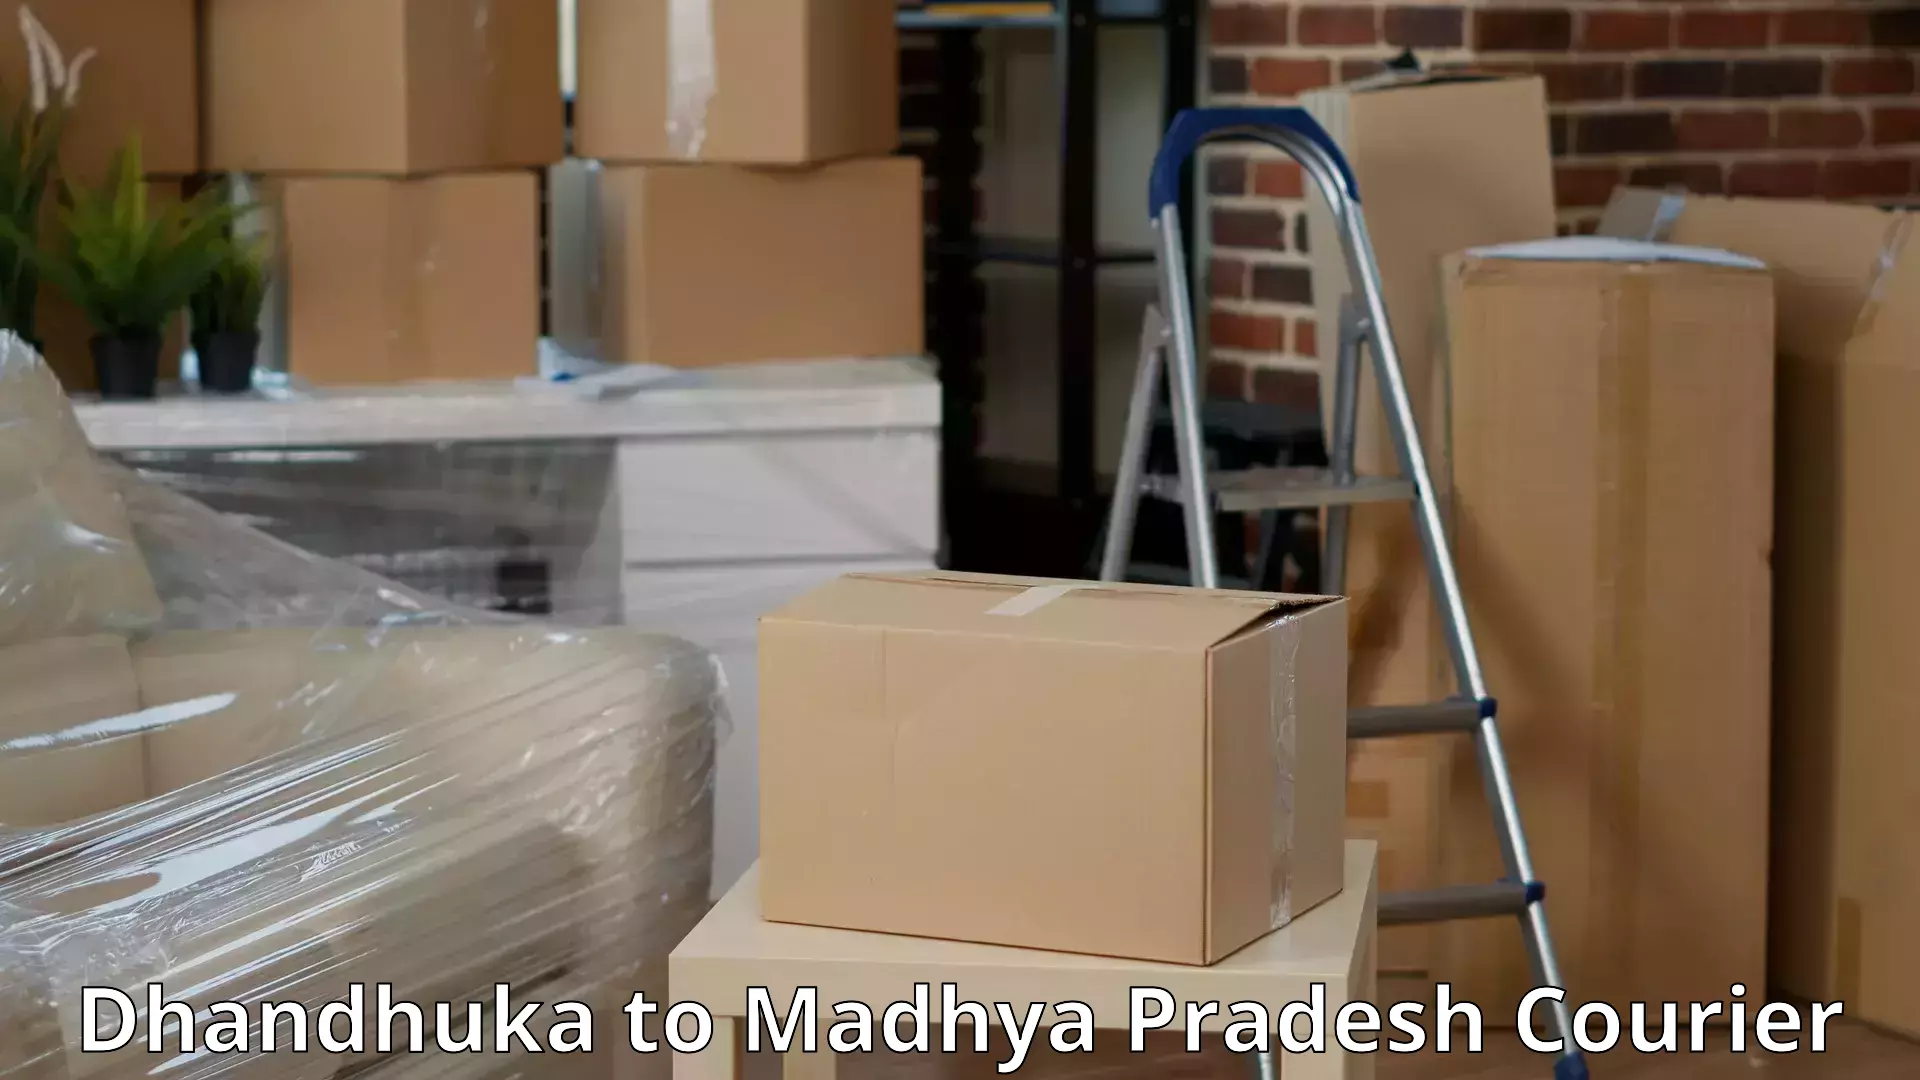 Home shifting experts Dhandhuka to Madhya Pradesh